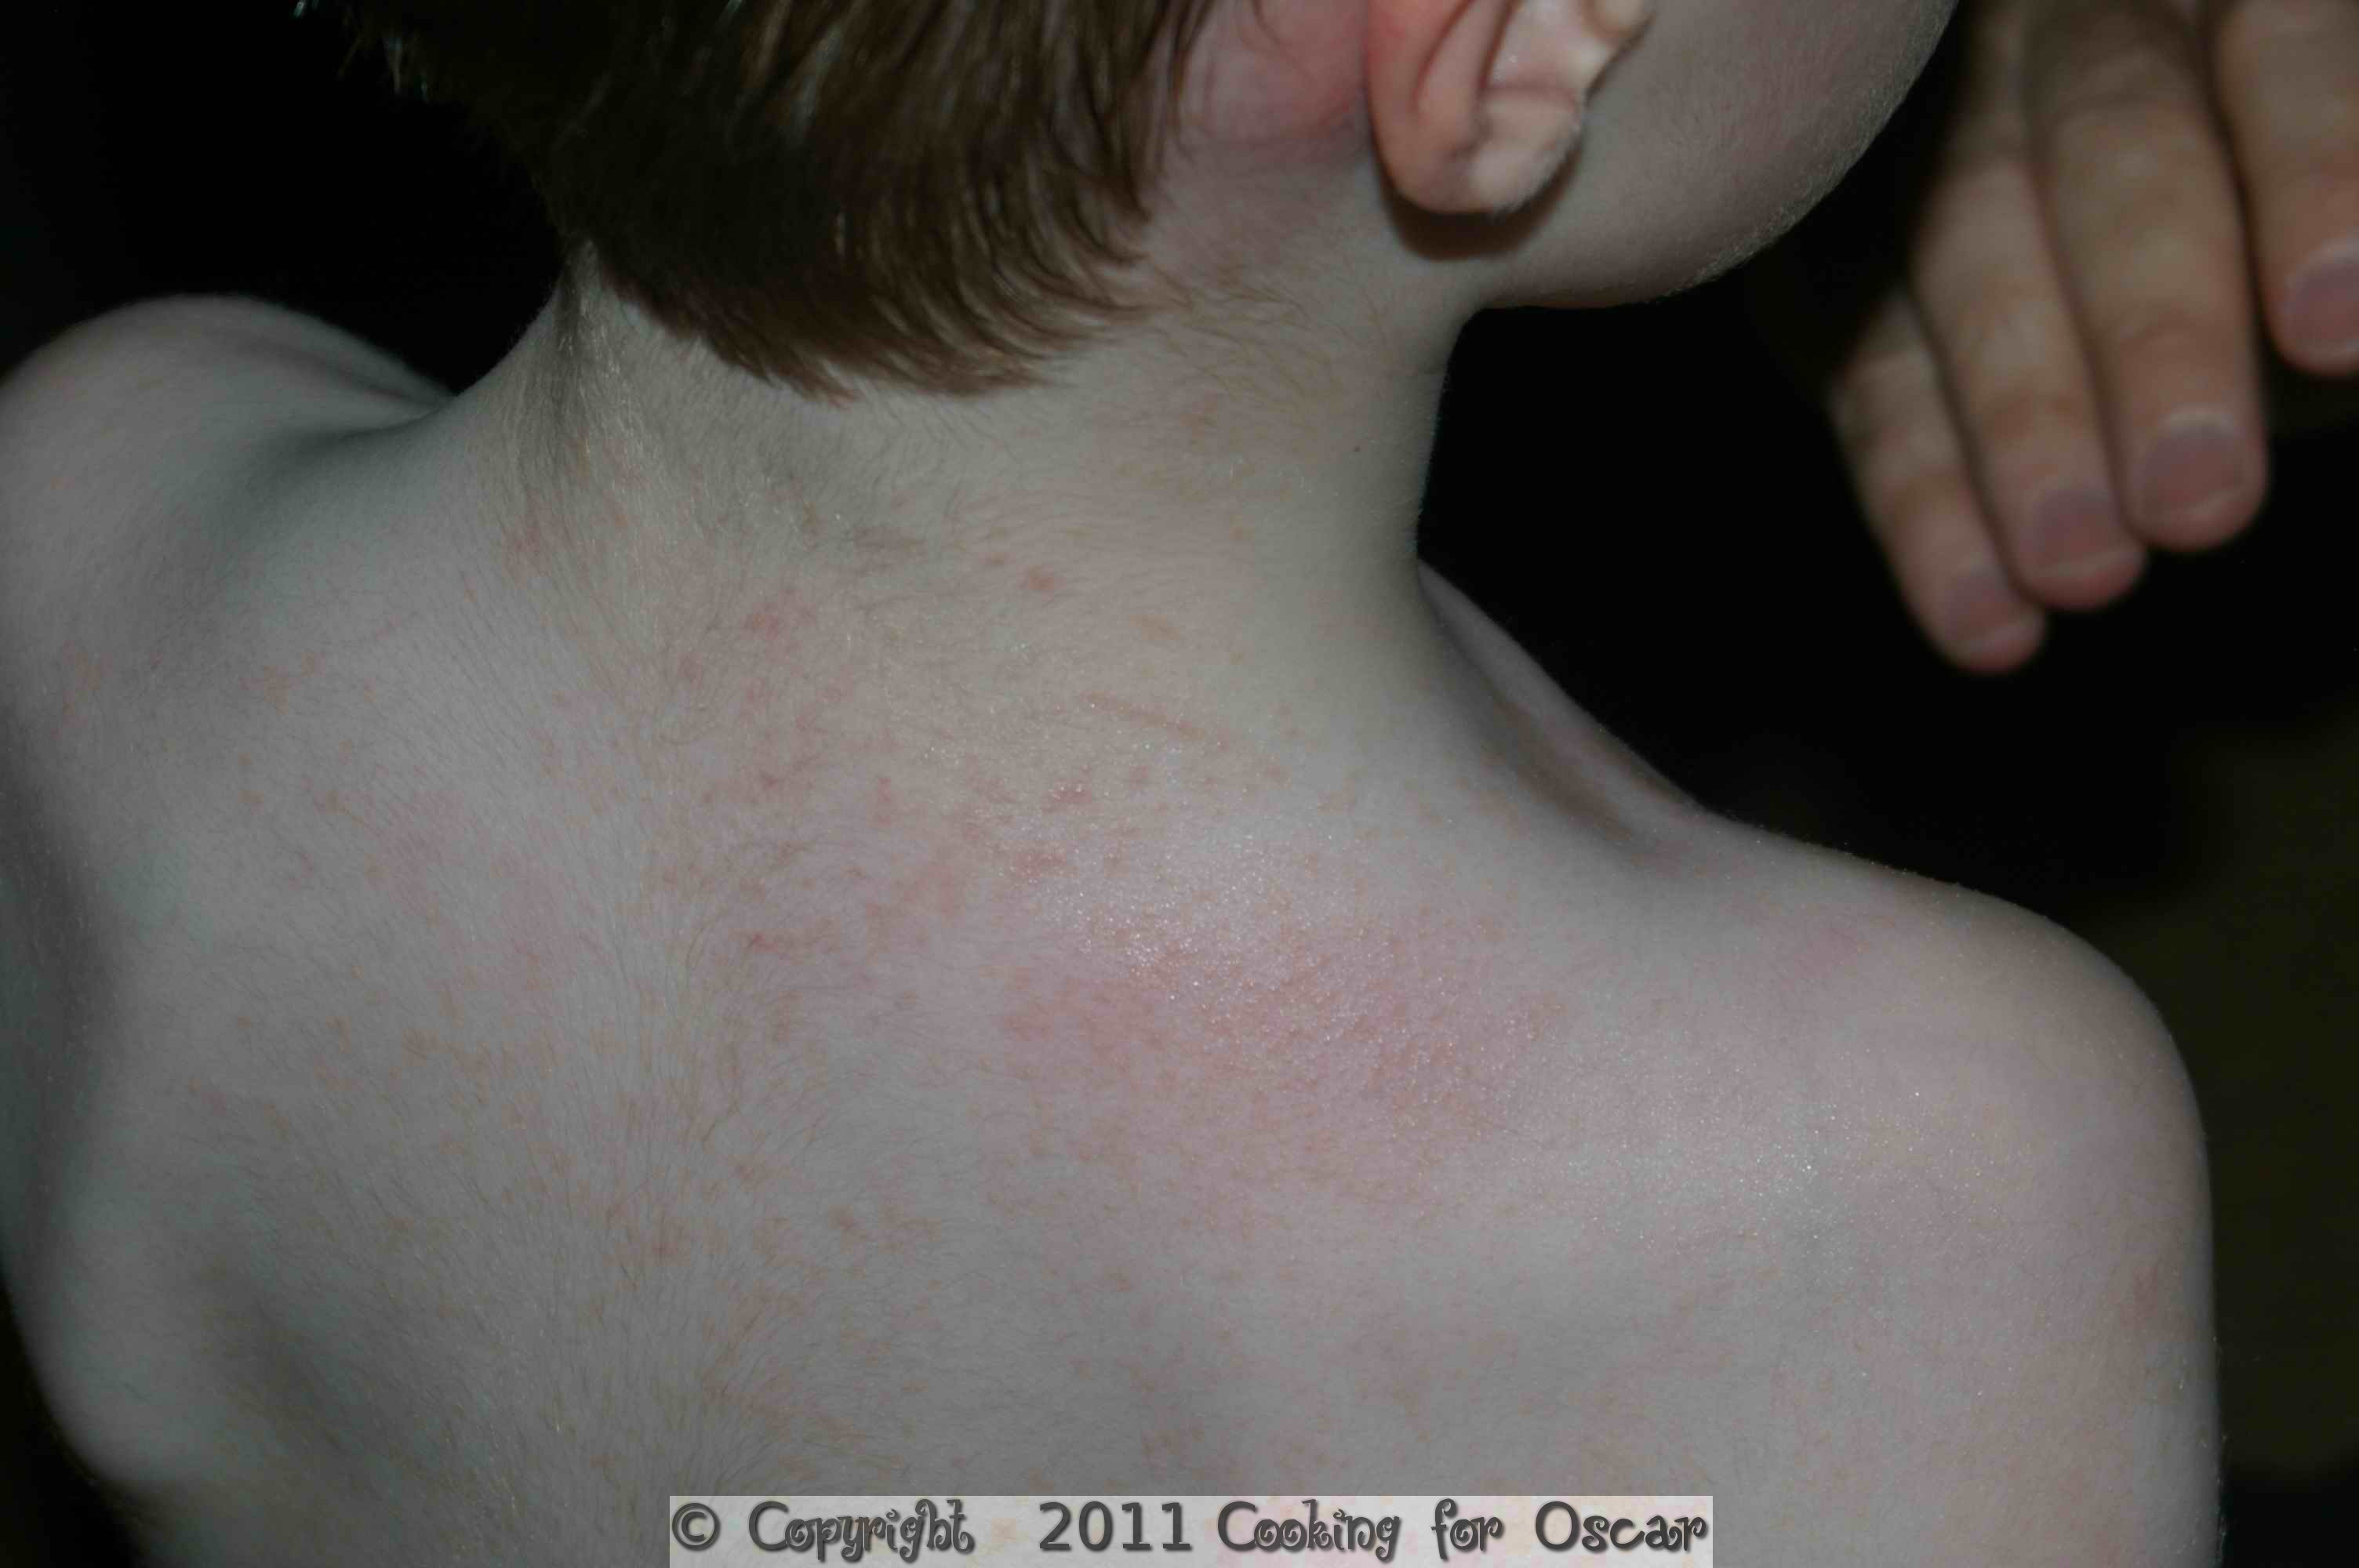 Eczema on shoulders